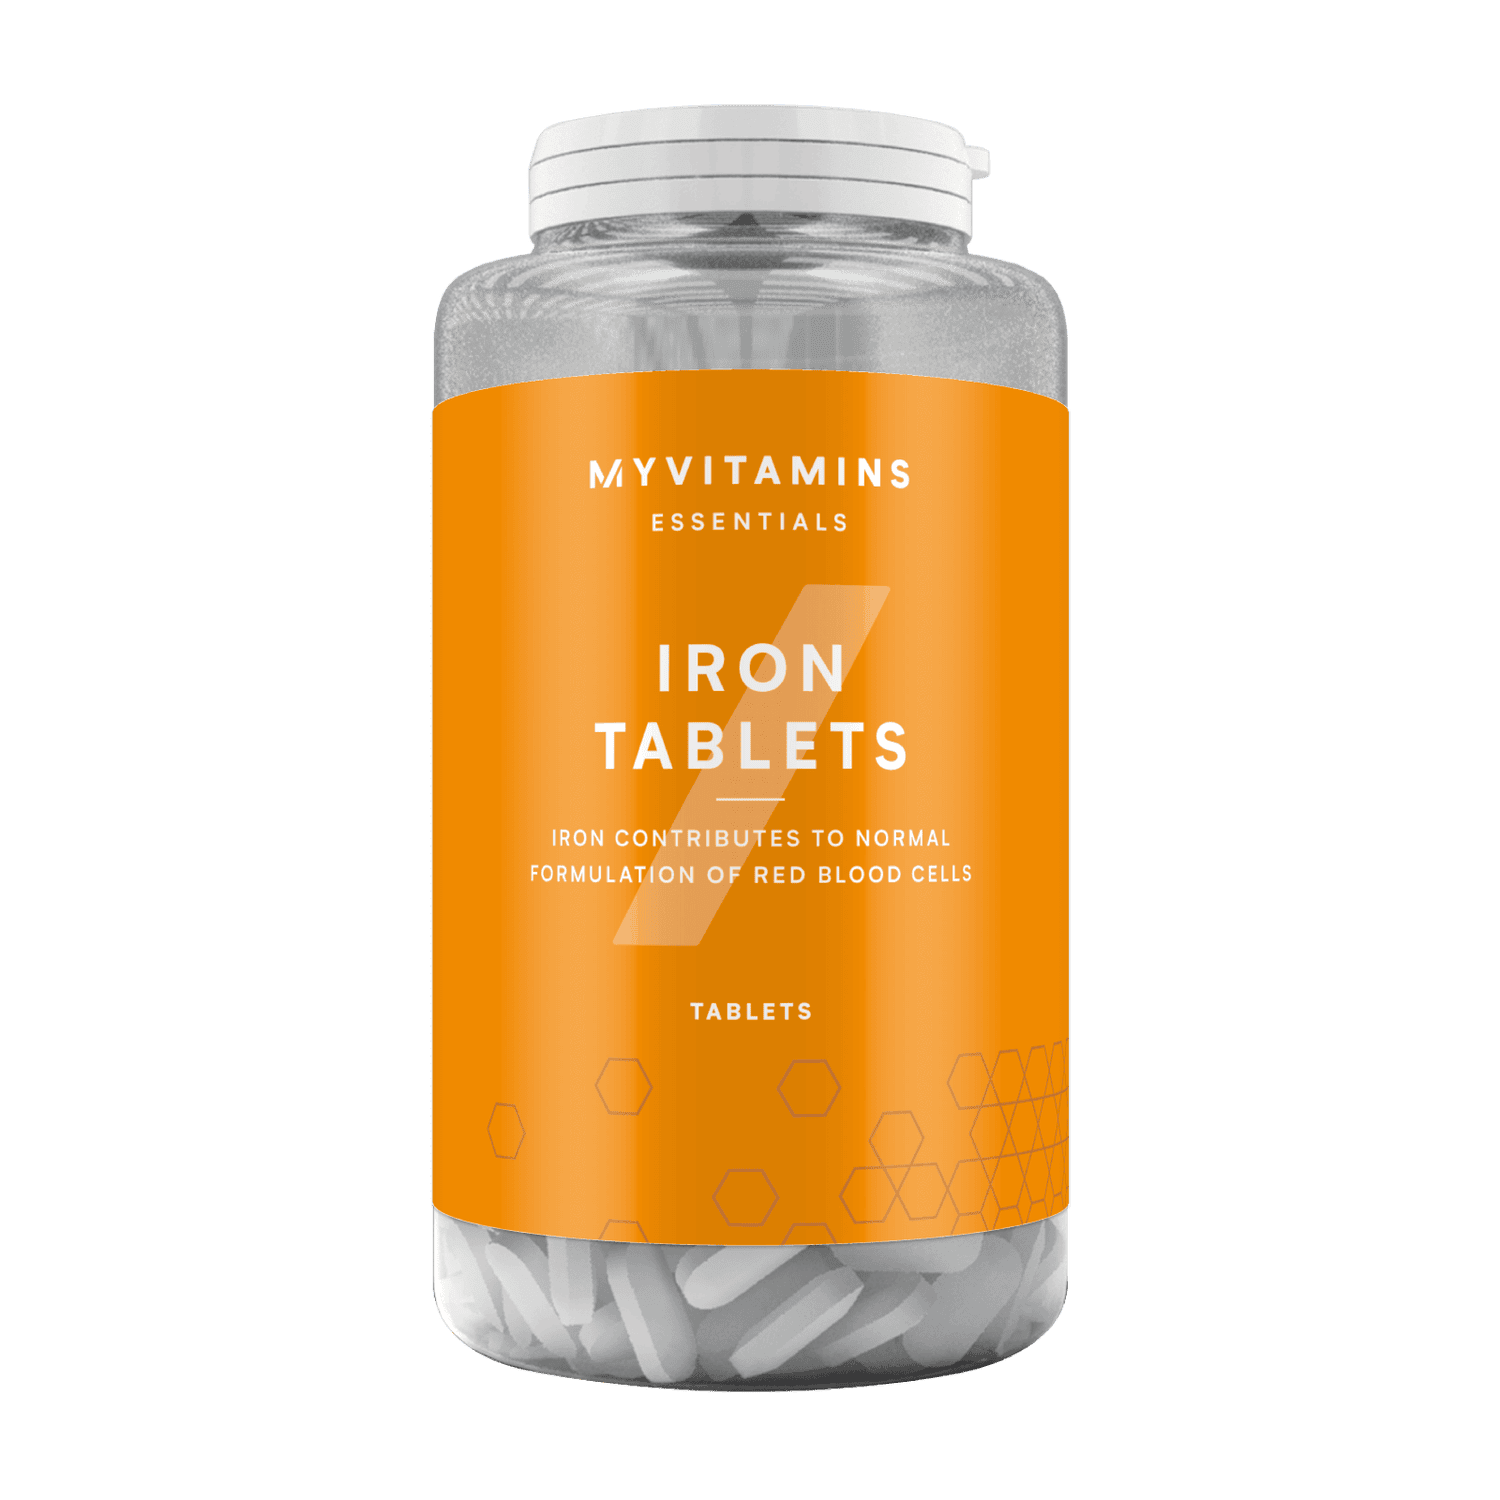 Myvitamins Iron Tablets